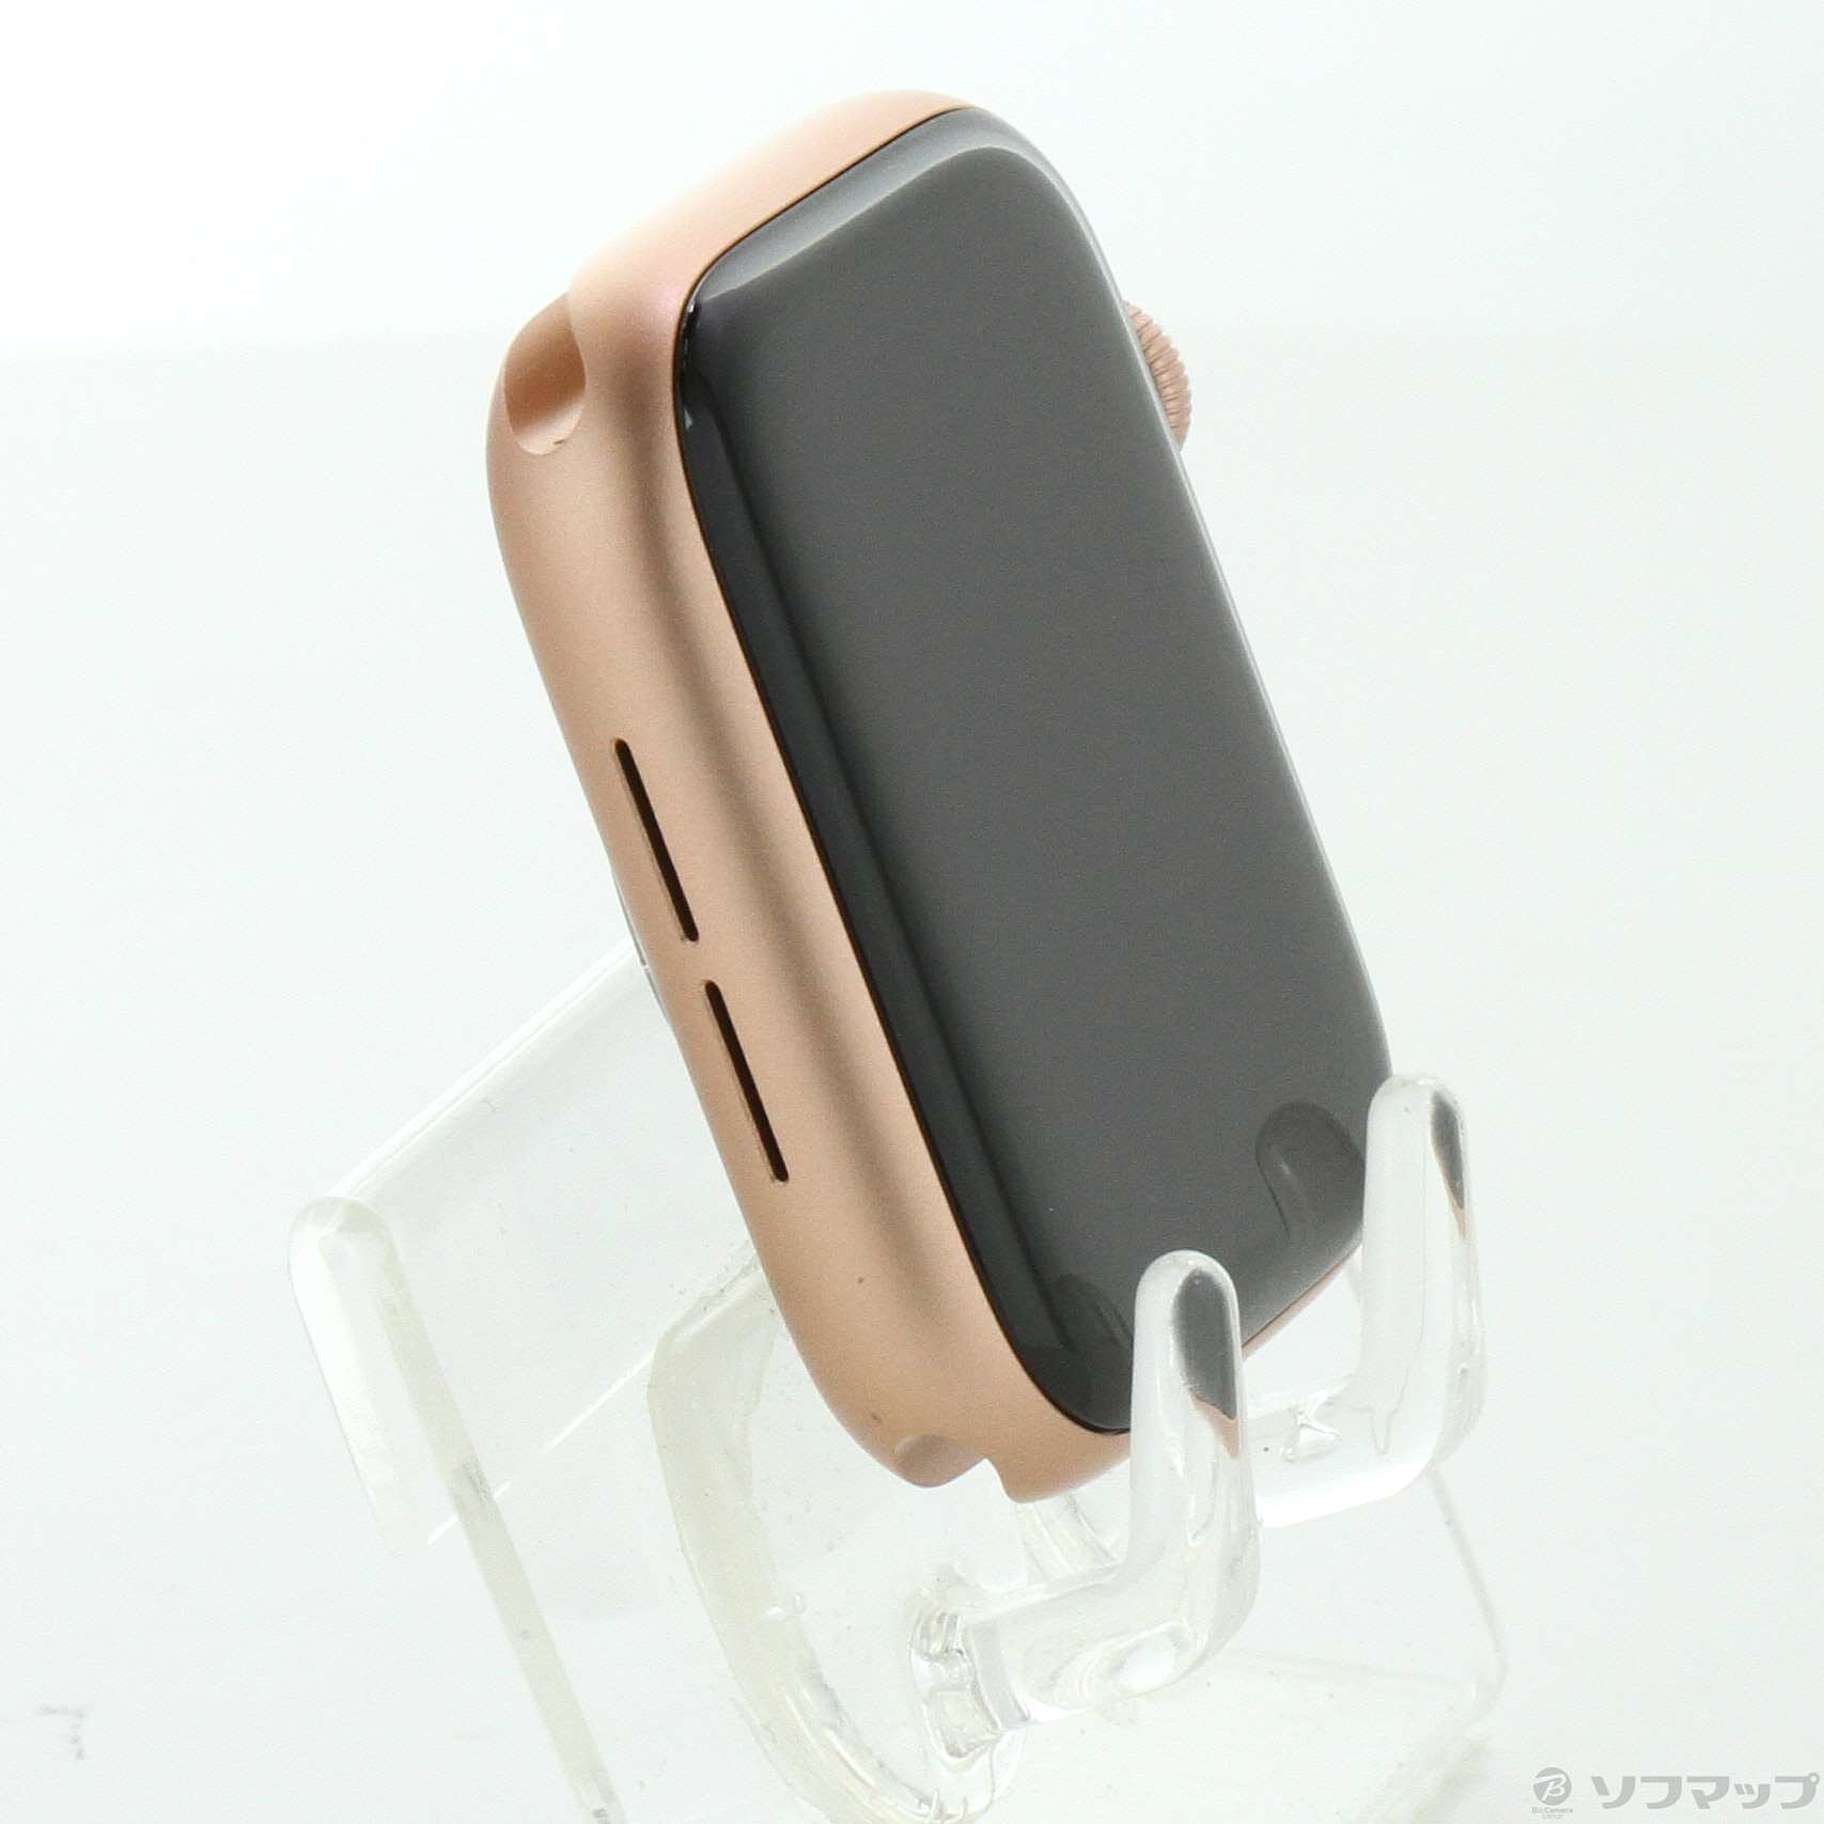 中古】Apple Watch Series 6 GPS 44mm ゴールドアルミニウムケース